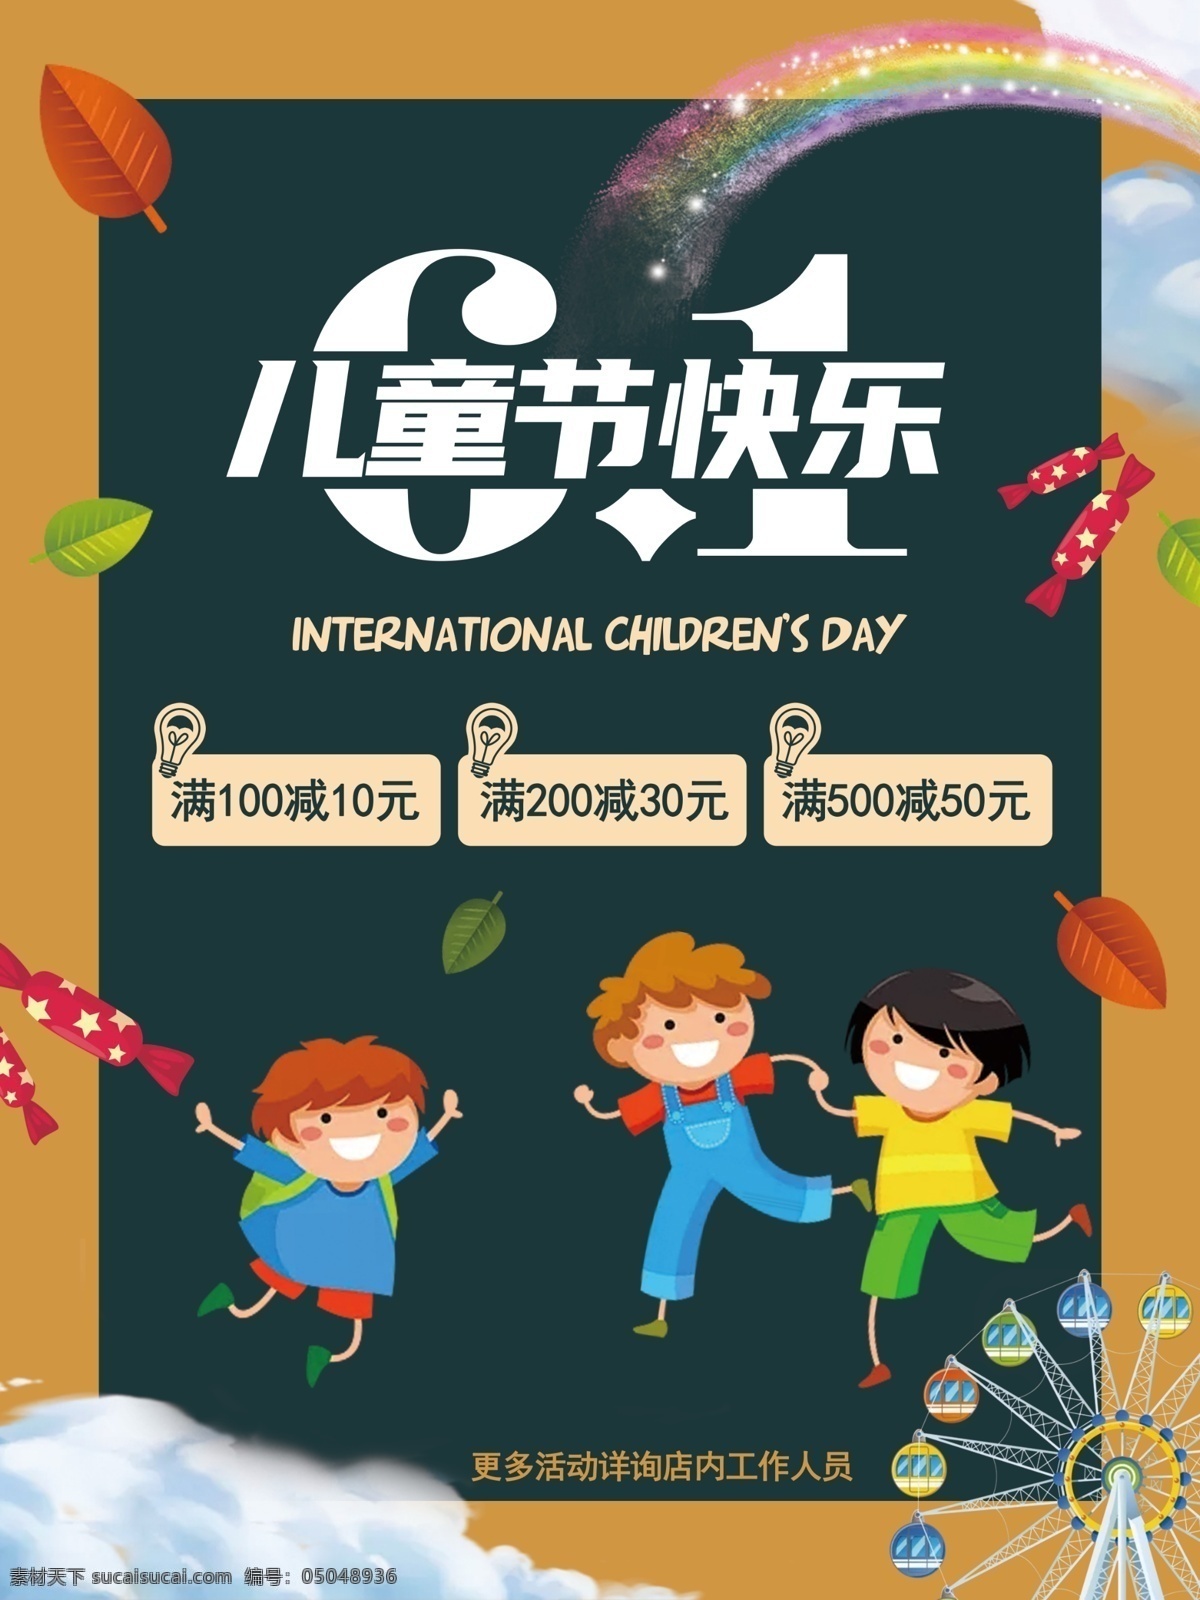 六一海报 六一儿童节 儿童节 儿童节海报 61 国际儿童节 六一 儿童节促销 儿童节快乐 平面设计